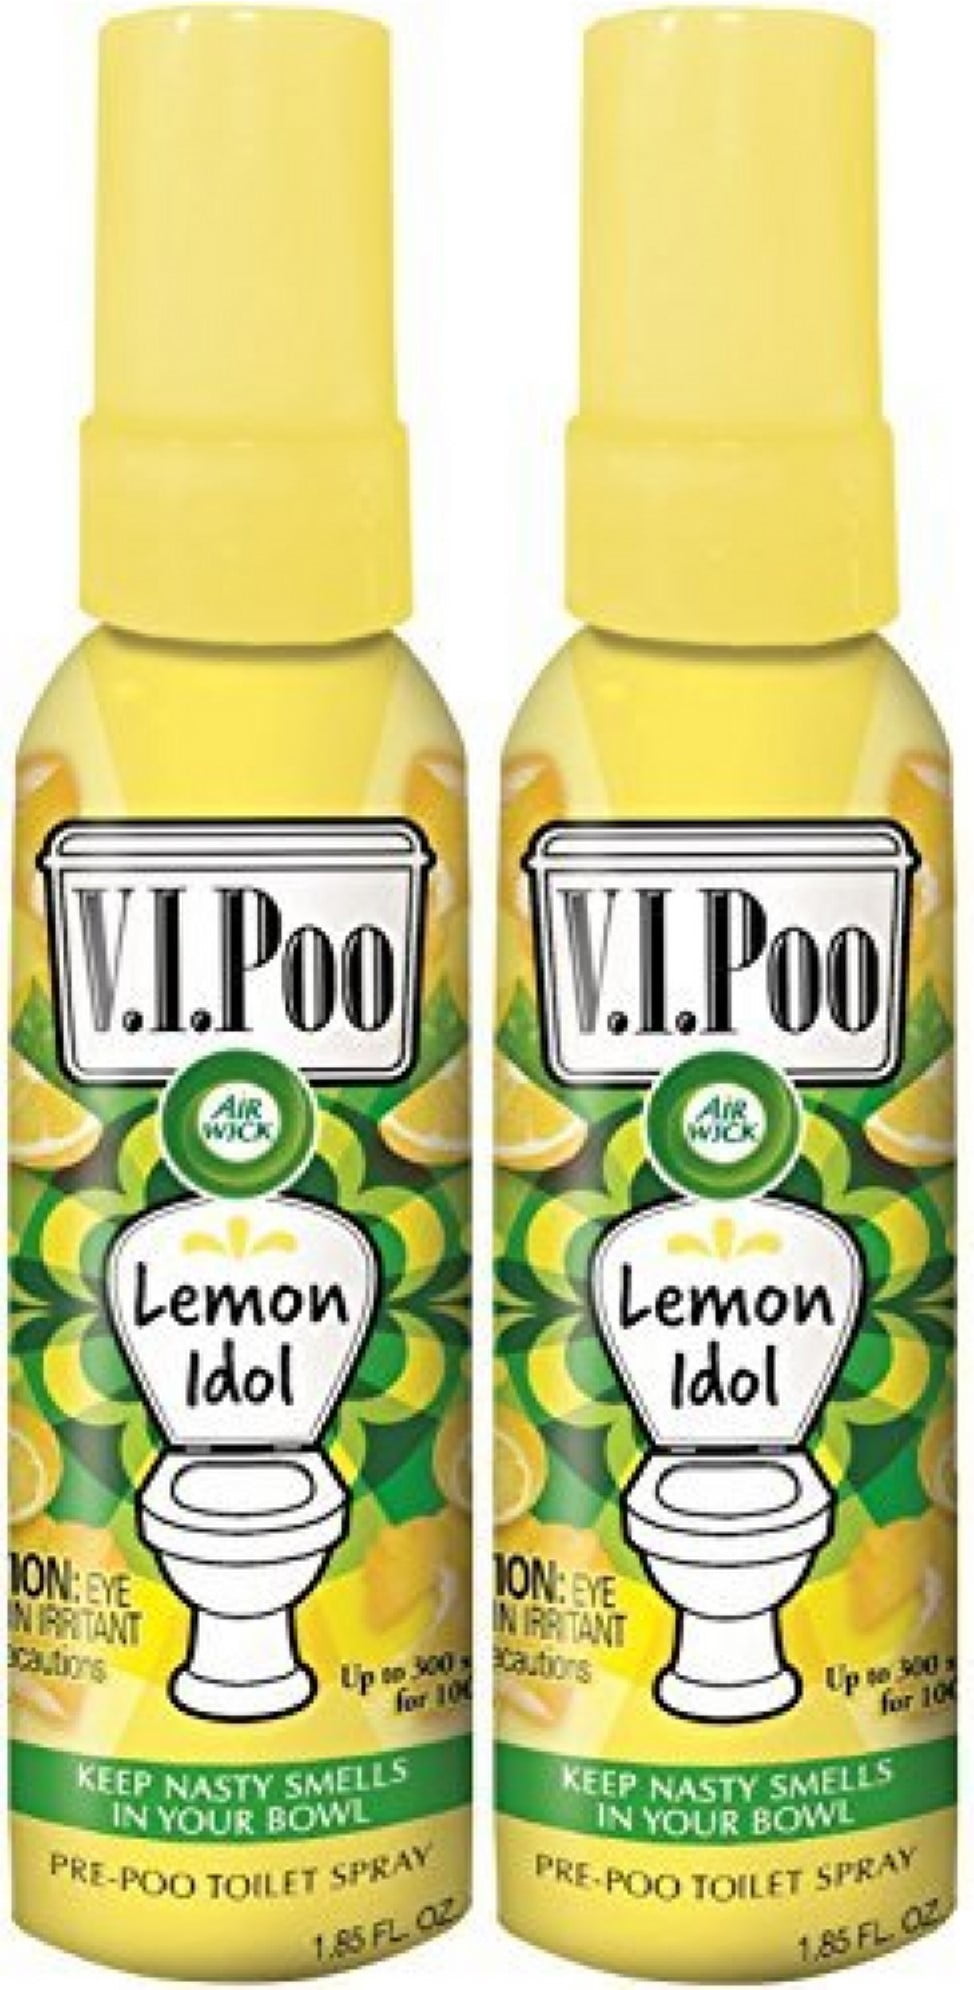 AIR WICK® VIPoo Pre-Poop Toilet Spray - Lemon Idol (Canada)